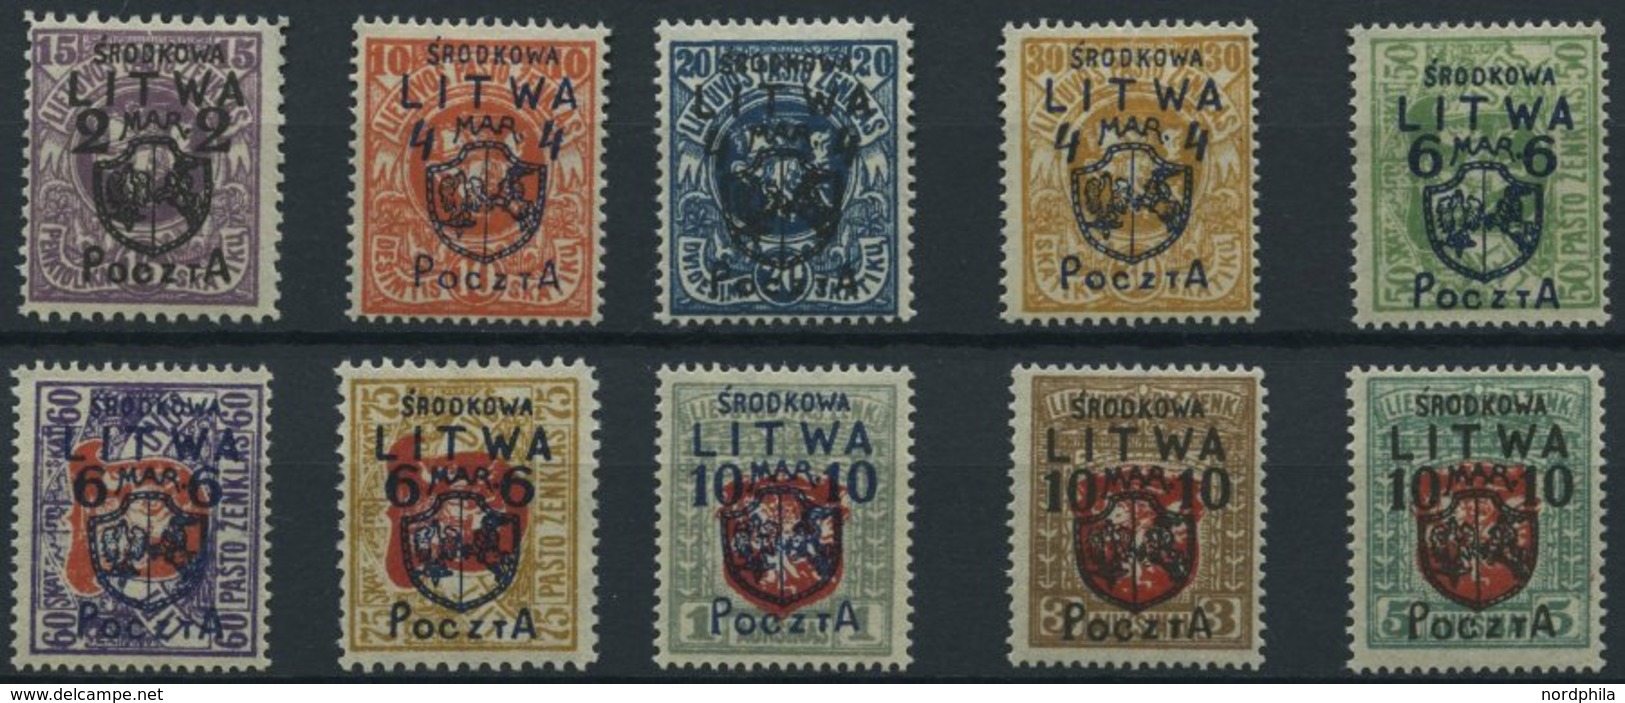 MITTELLITAUEN 4-13 *, 1920, Freimarken, Falzrest, Prachtsatz, R!, Endwerte Gepr. Dr. Esser, Mi. 6500.- - Lithuania